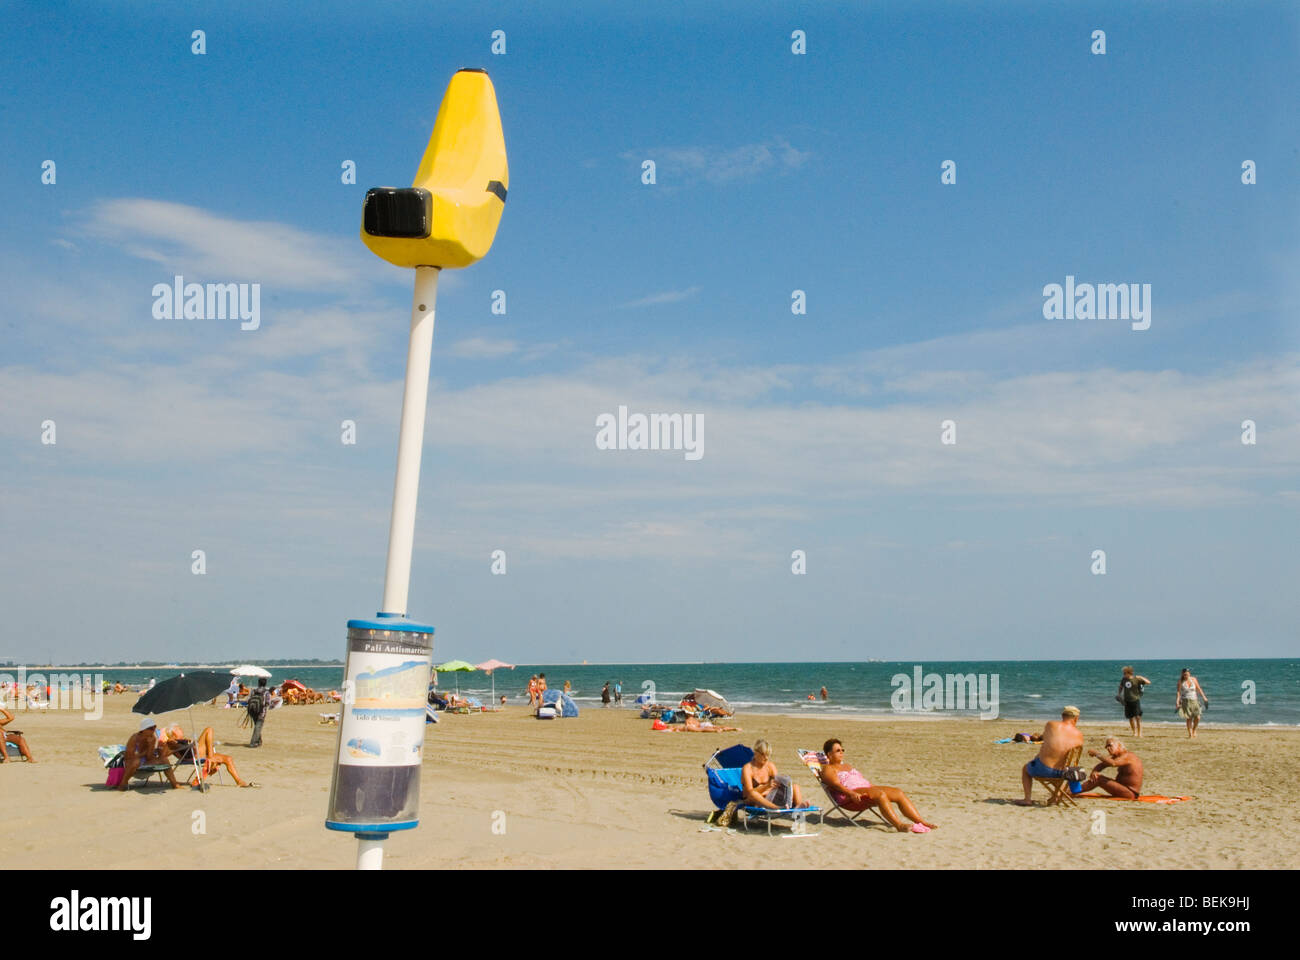 Venise Lido Italie la plage publique. Énorme panneau de banane permet aux gens de savoir où ils sont positionnés sur la plage 2000s 2009 HOMER SYKES Banque D'Images